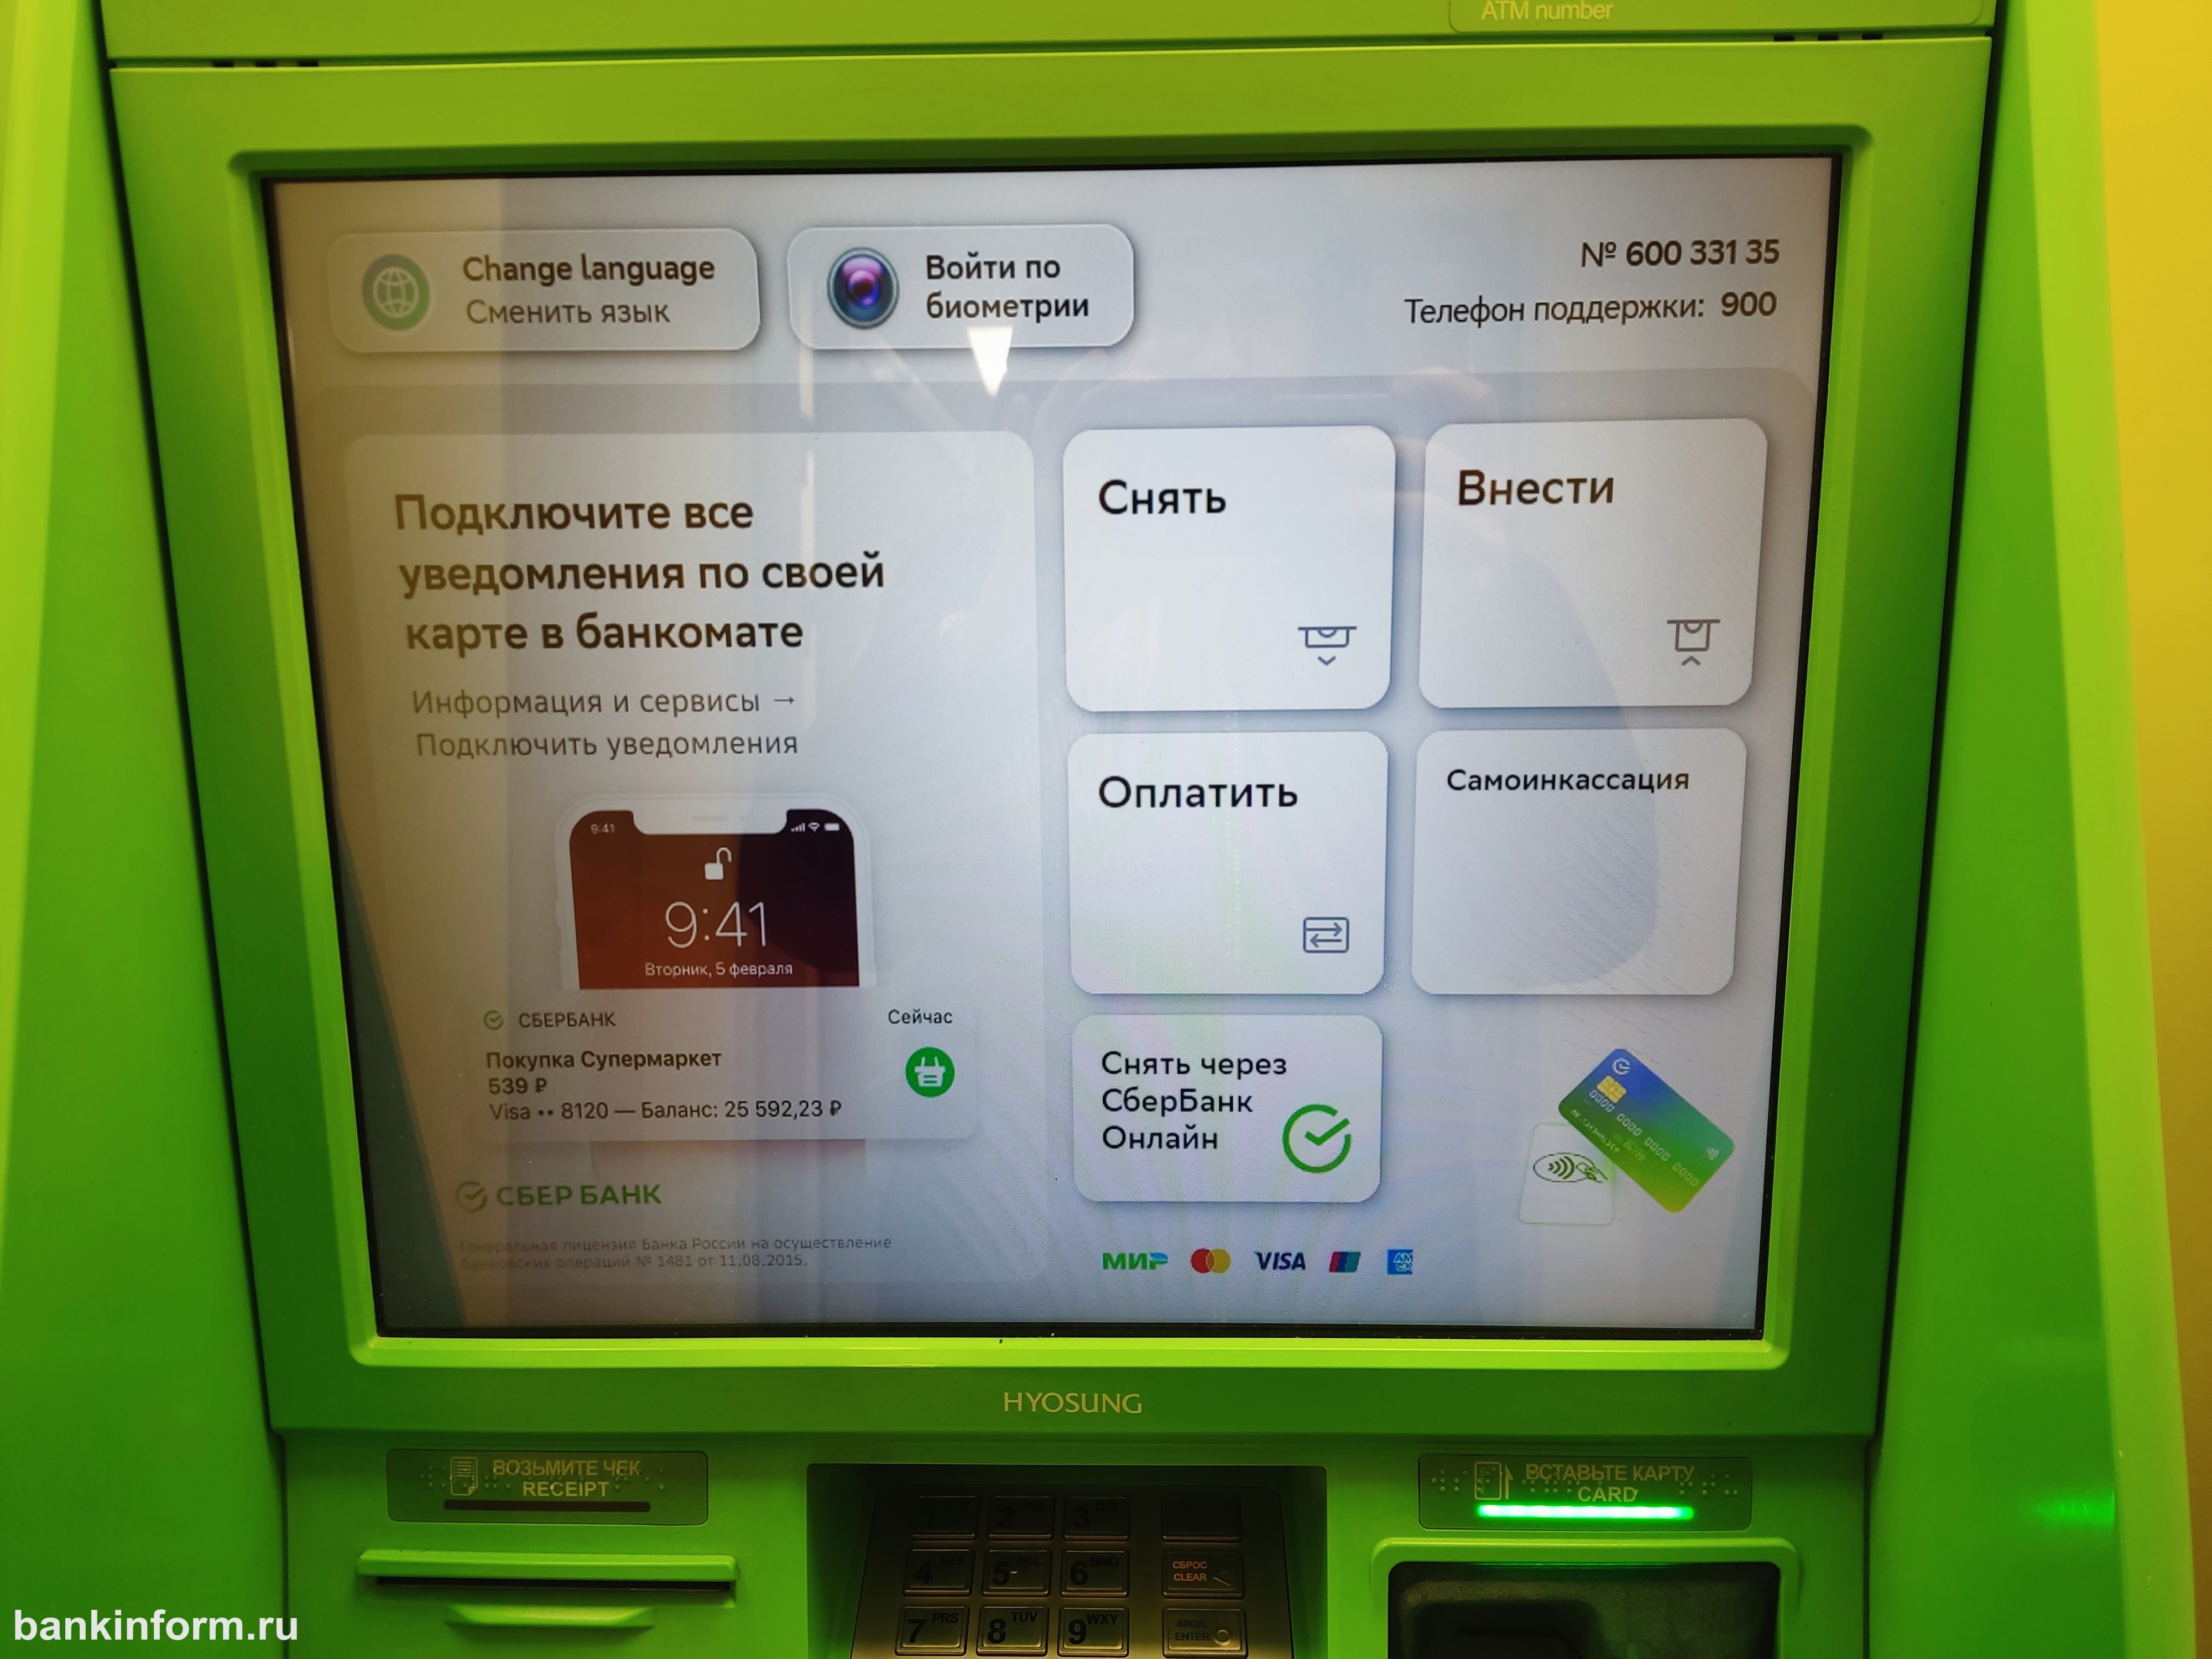 Сбербанк нужно снять деньги. Экран банкомата. Деньги в банкомате. Экран банкомата Сбербанка. Клавиатура банкомата.